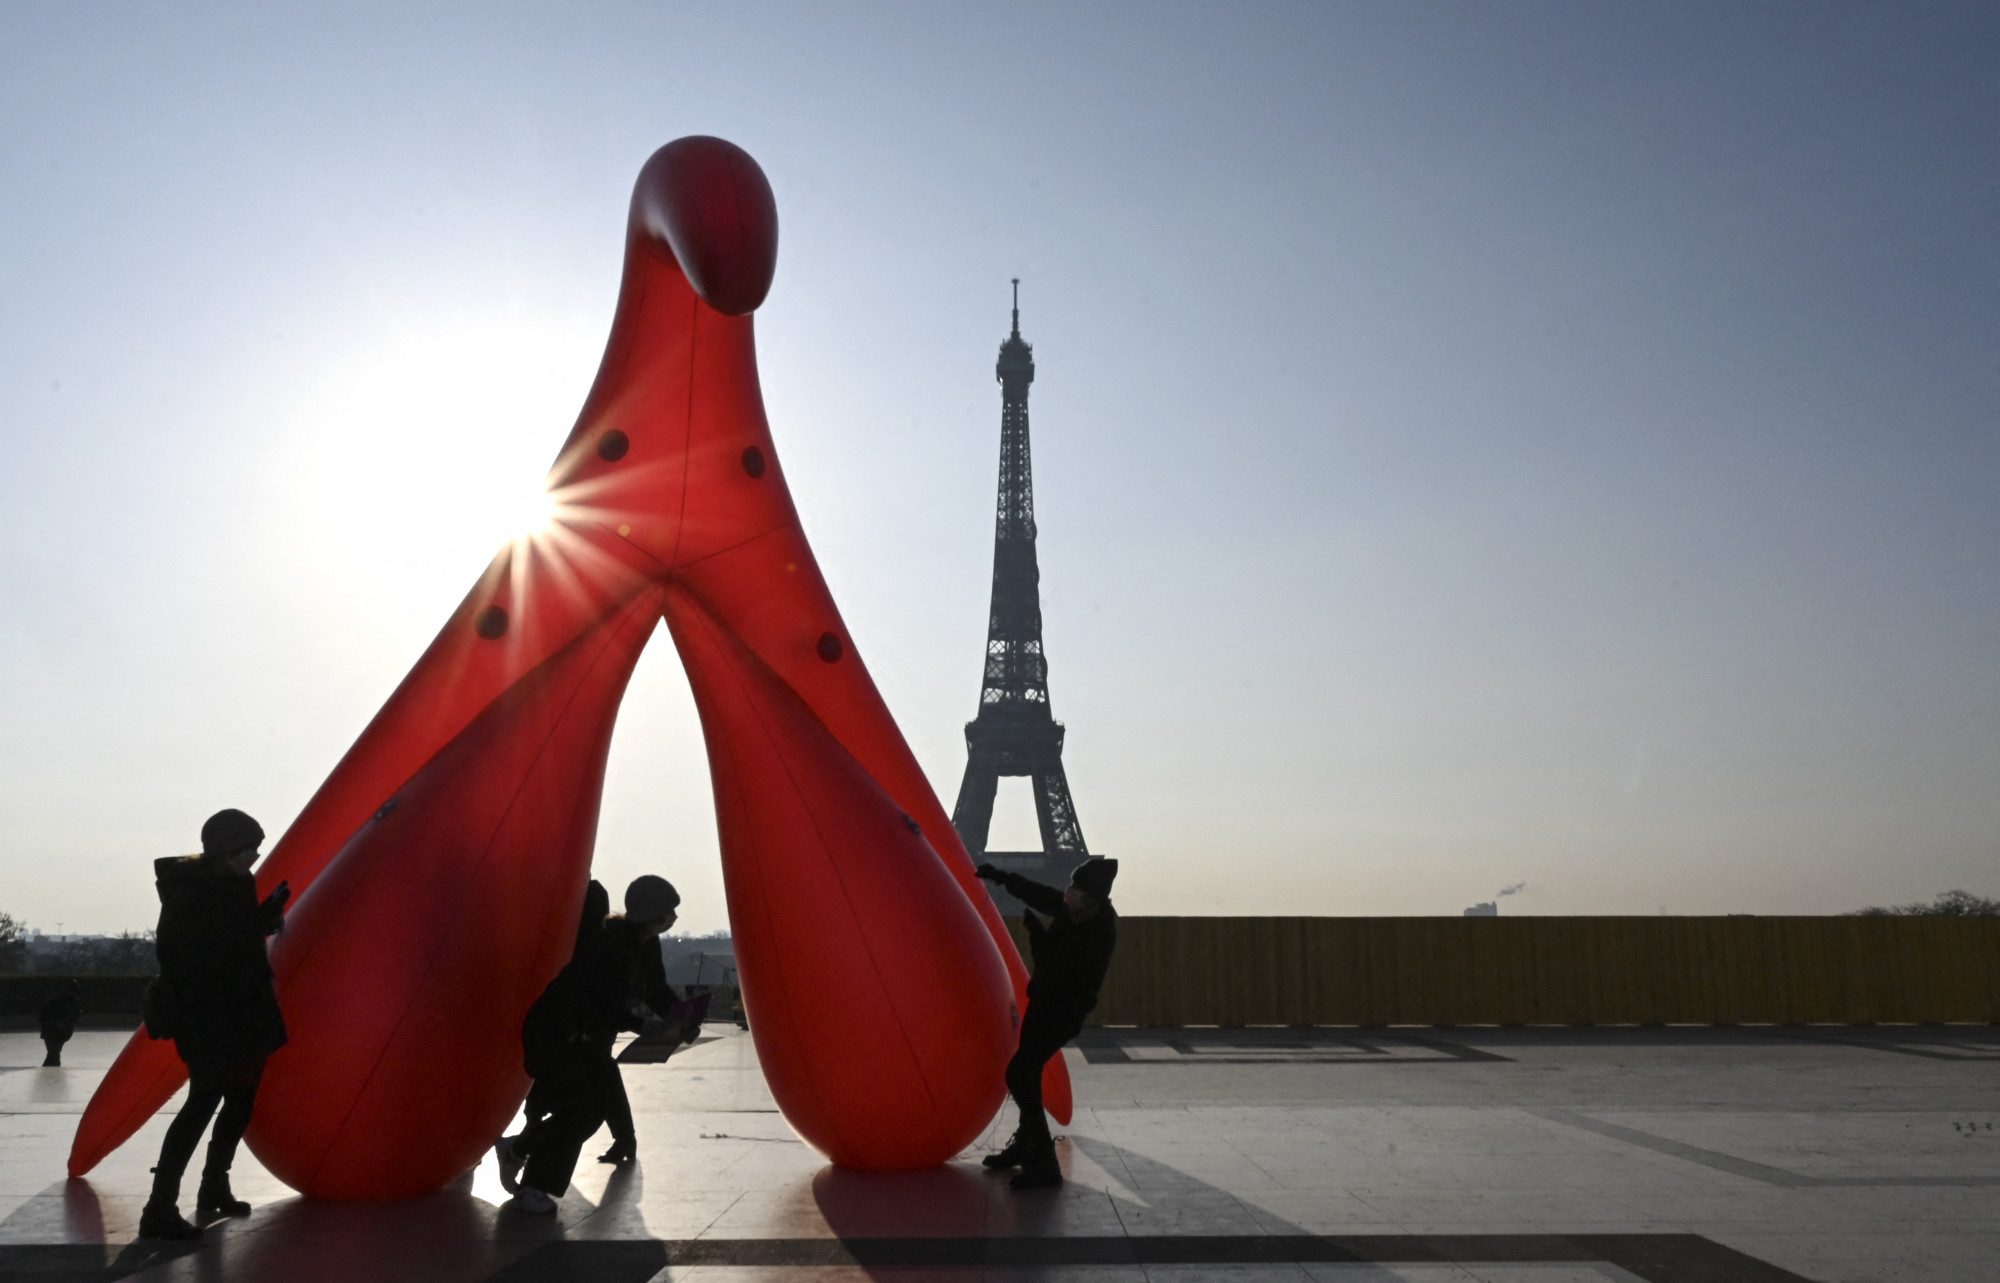 A humán klitorisz felnagyított 3D-s modellje Párizsban 2021-ben a nemzetközi nőnapon